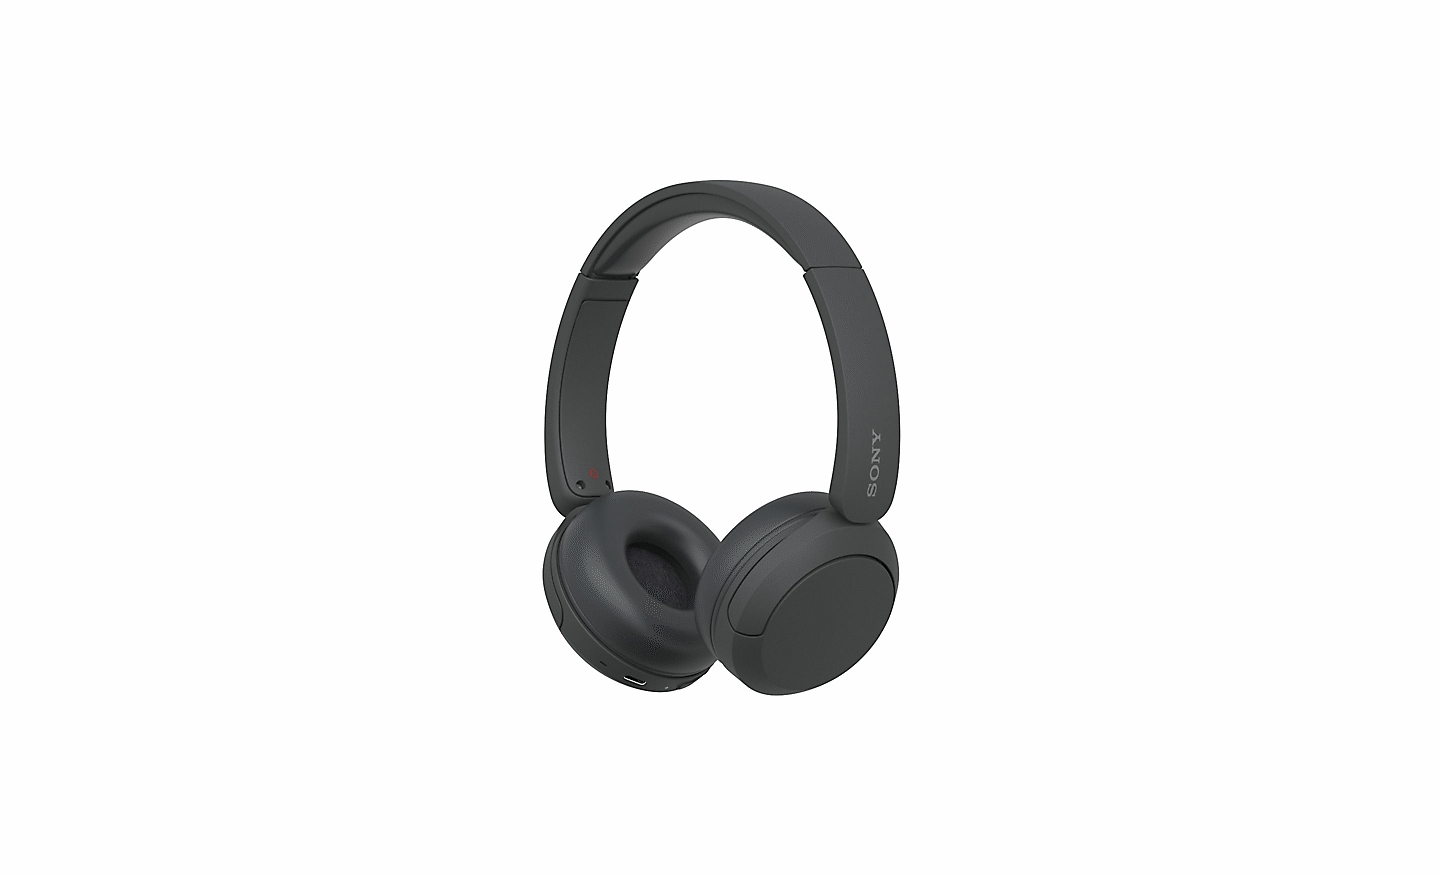 白色背景中一對黑色 Sony 的 WH-CH520 耳機影像